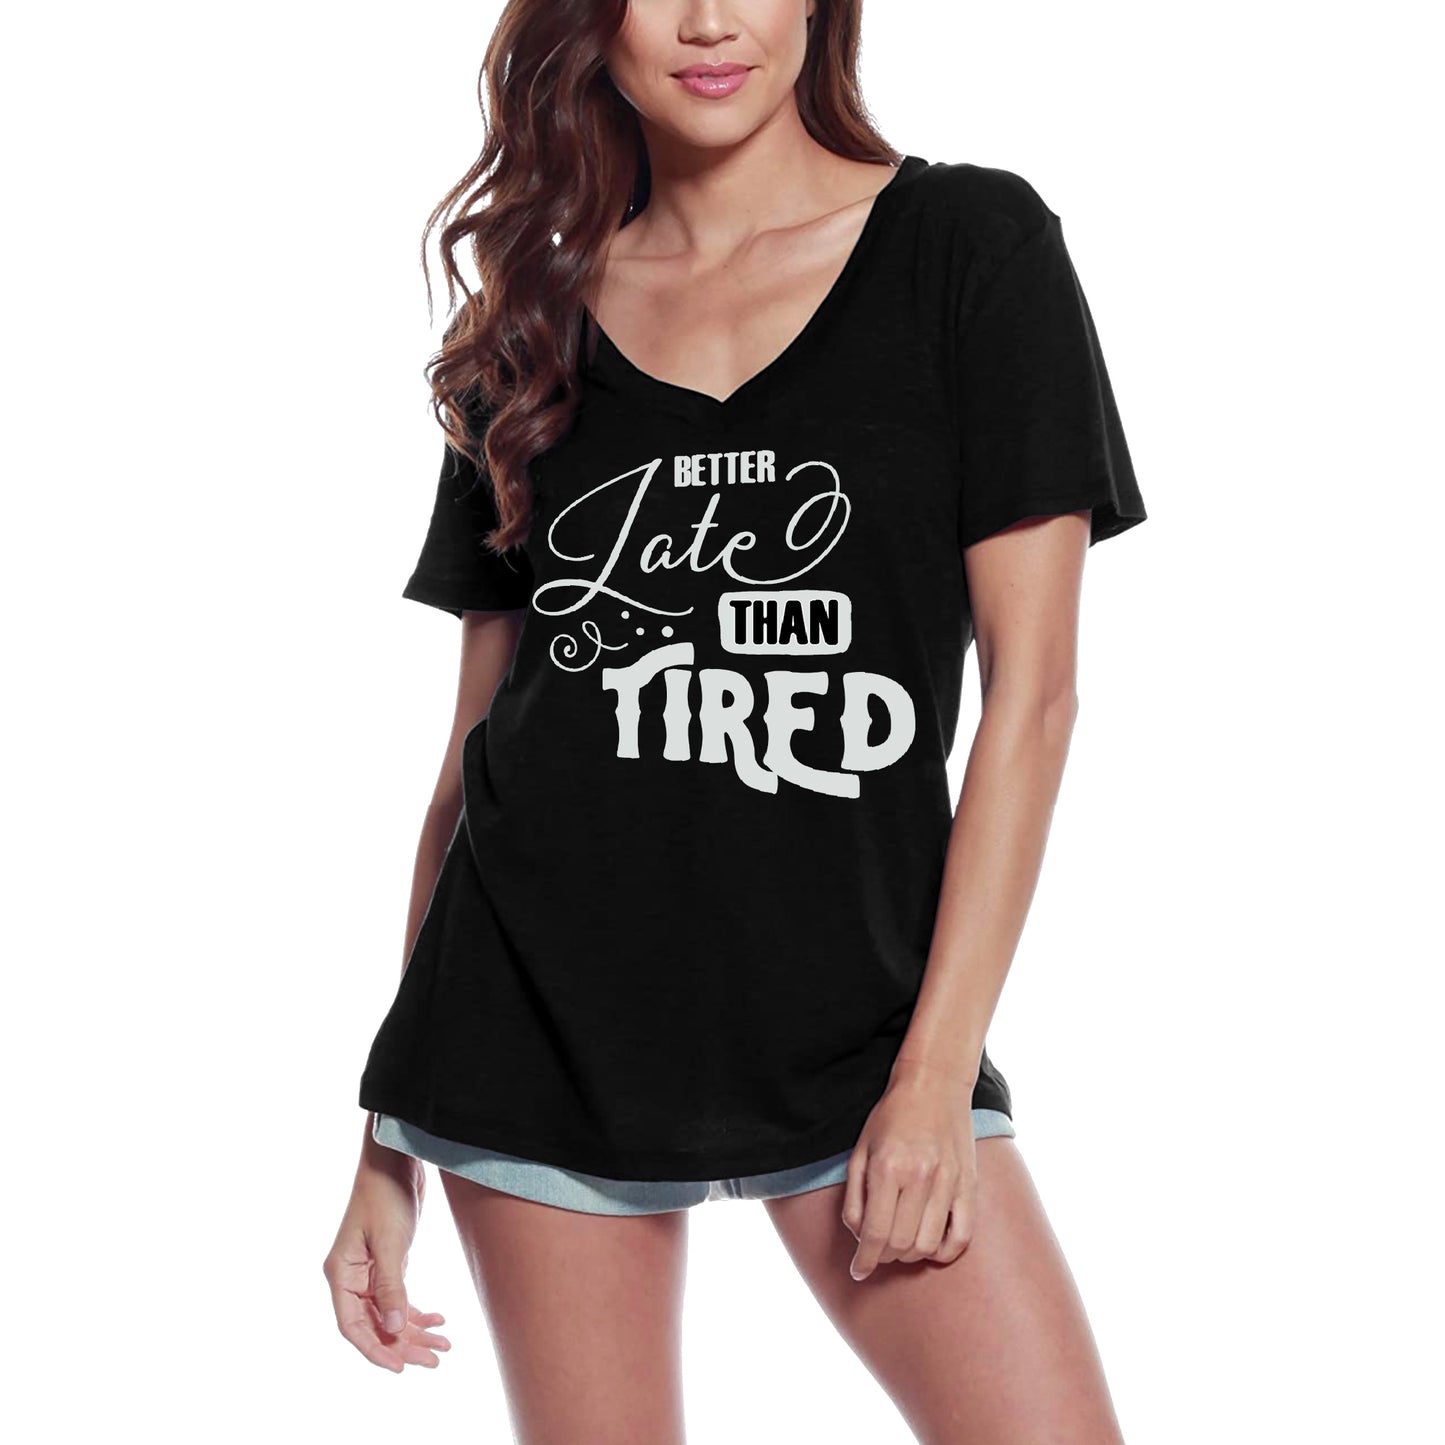 ULTRABASIC Women's T-Shirt Better Late than Tired - Short Sleeve Tee Shirt Tops